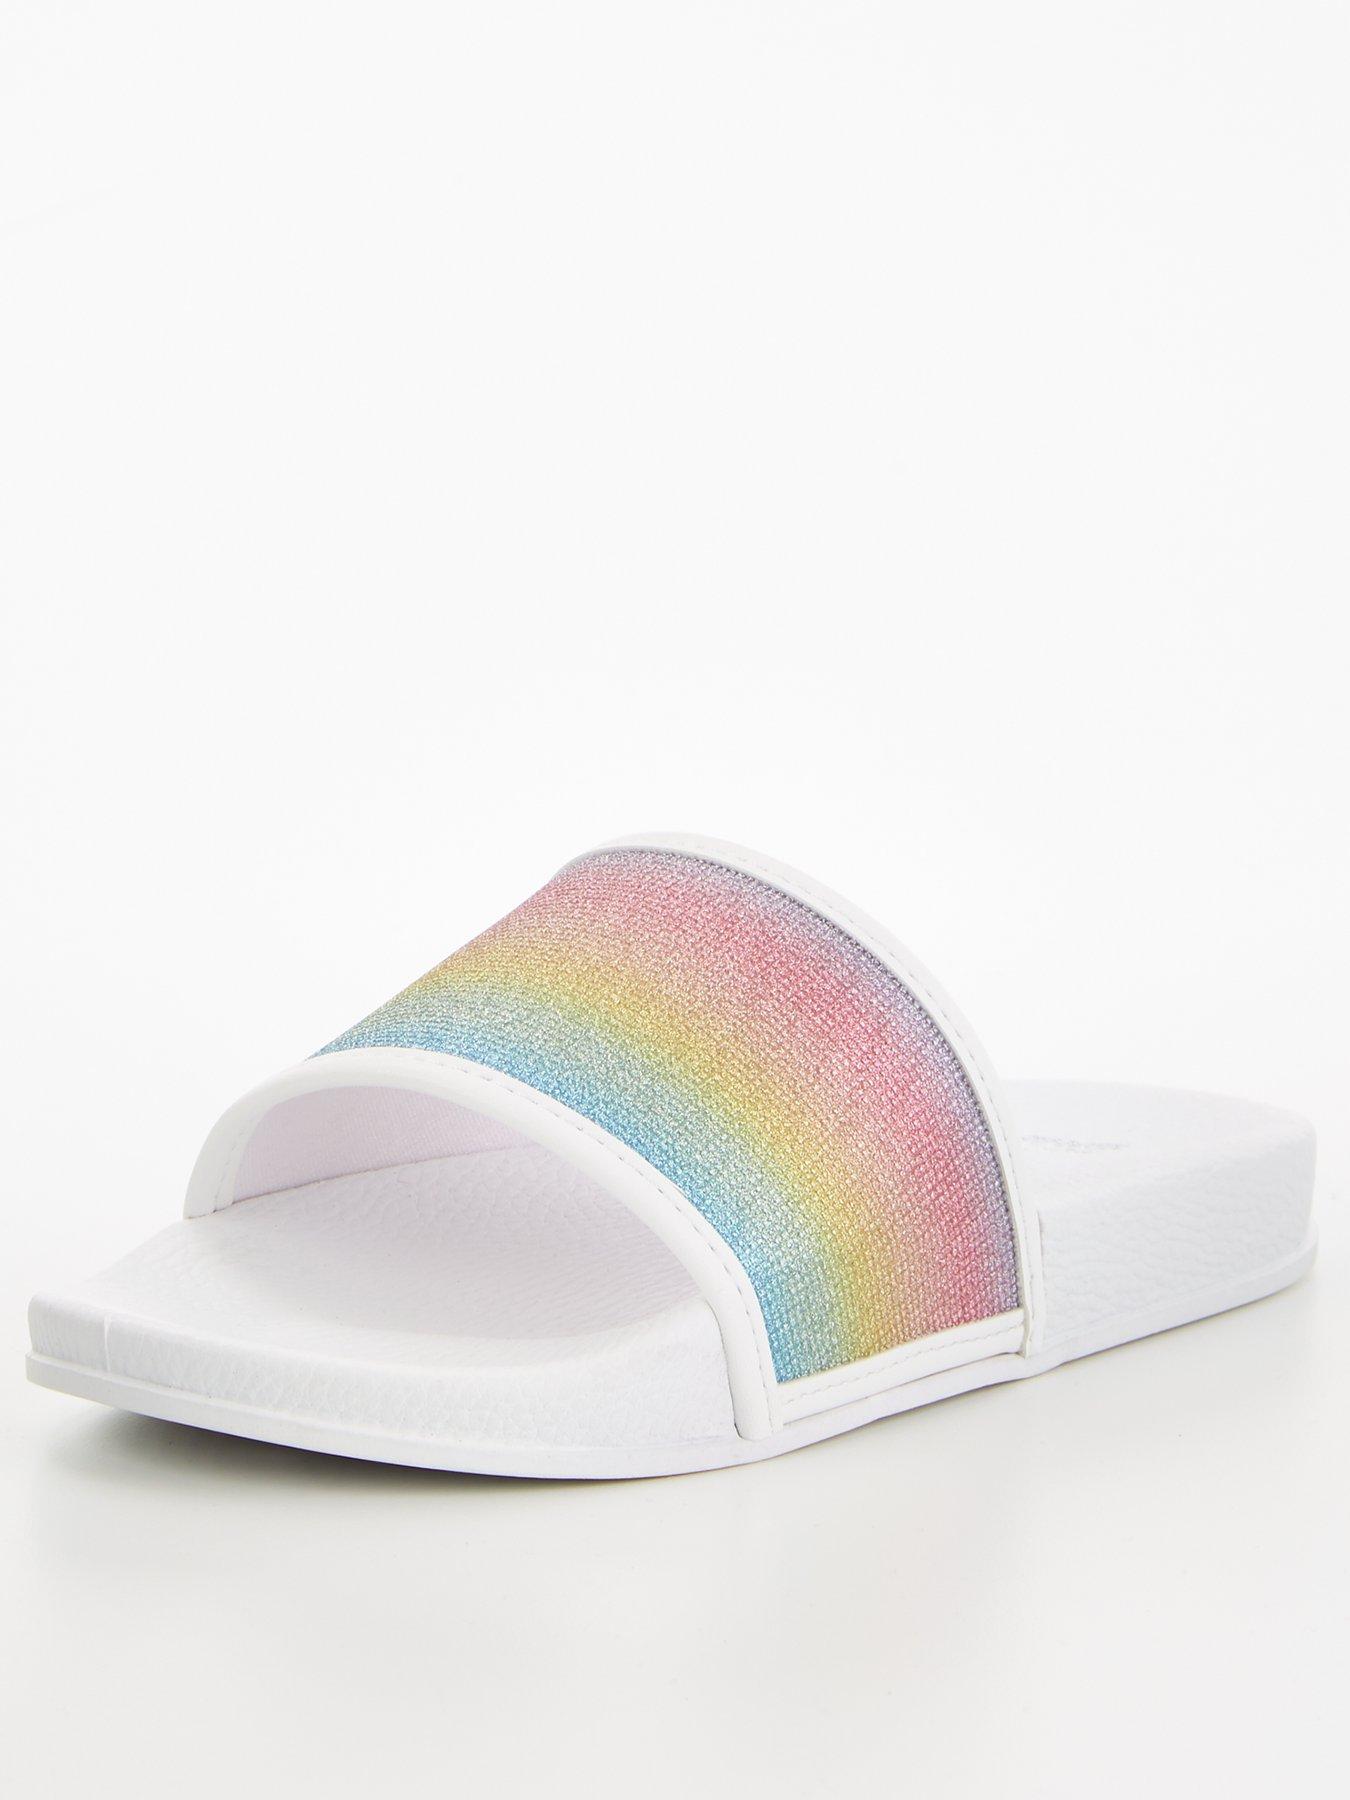 slides and flip flops Sandals and flip-flops Save 47% Versace Rubber Slide Sandals in Pink for Men Mens Shoes Sandals 